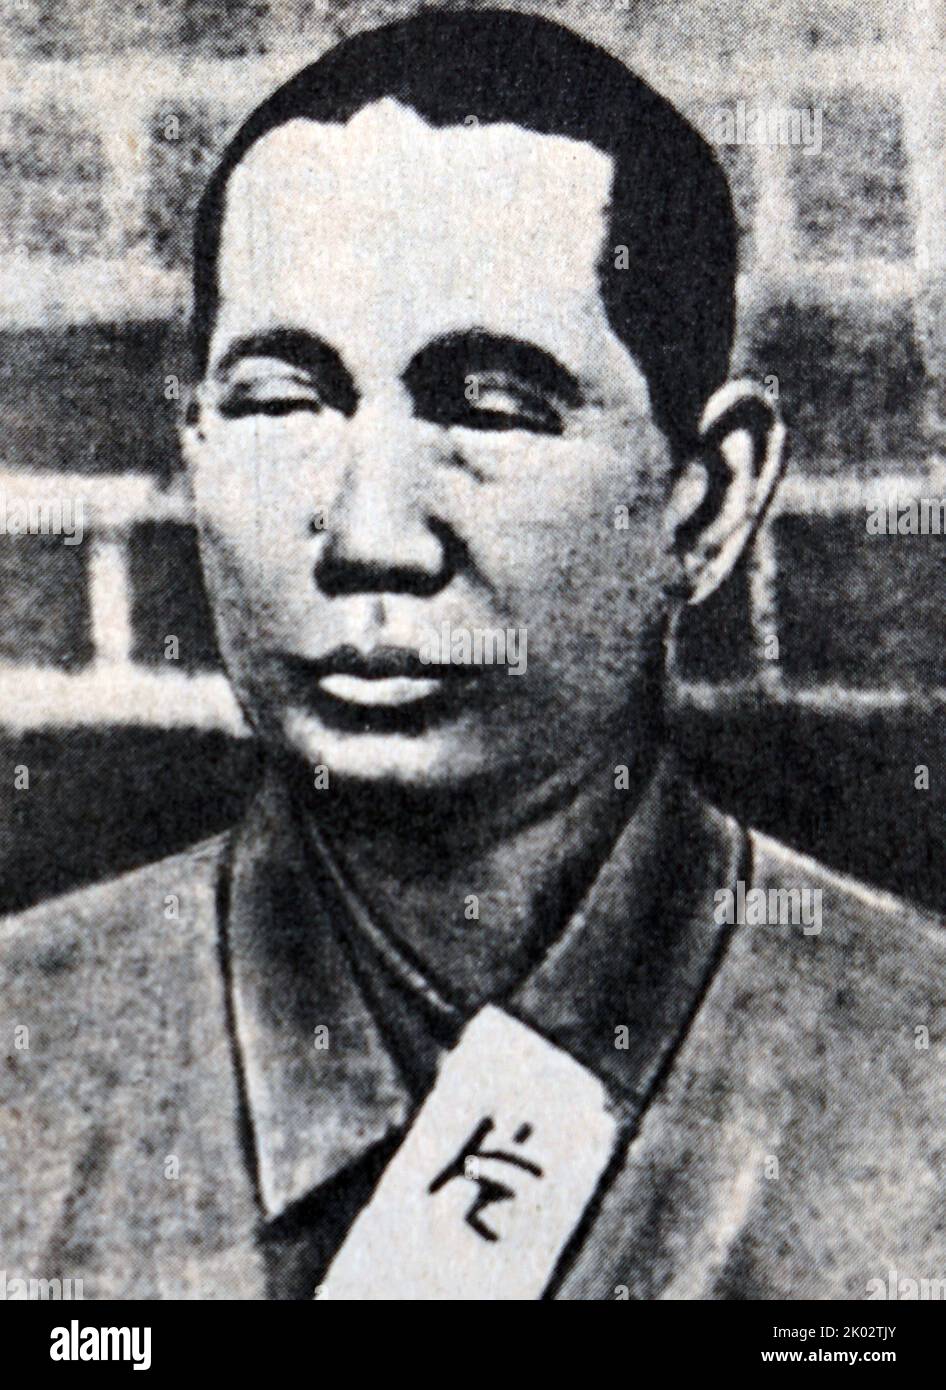 Katayama Sen (1859-1933), fotografiert in einem Gefängnis. Sen Katayama war ein früher japanischer marxistischer politischer Aktivist und Journalist, eines der ursprünglichen Mitglieder der Kommunistischen Partei Amerikas und Mitbegründer der Kommunistischen Partei Japans im Jahr 1922 Stockfoto